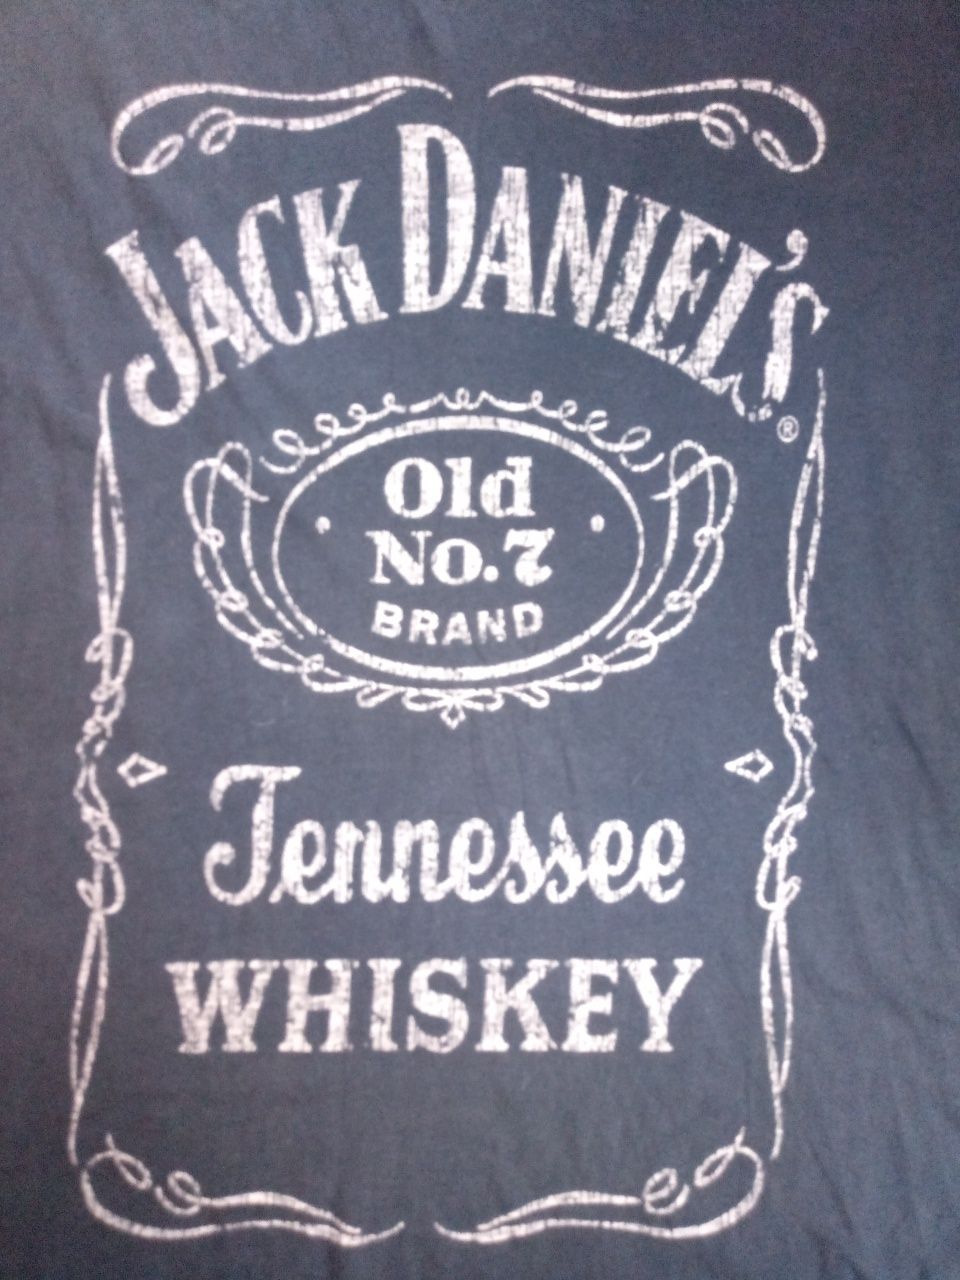 Jack Daniel's koszulka rozmiar L